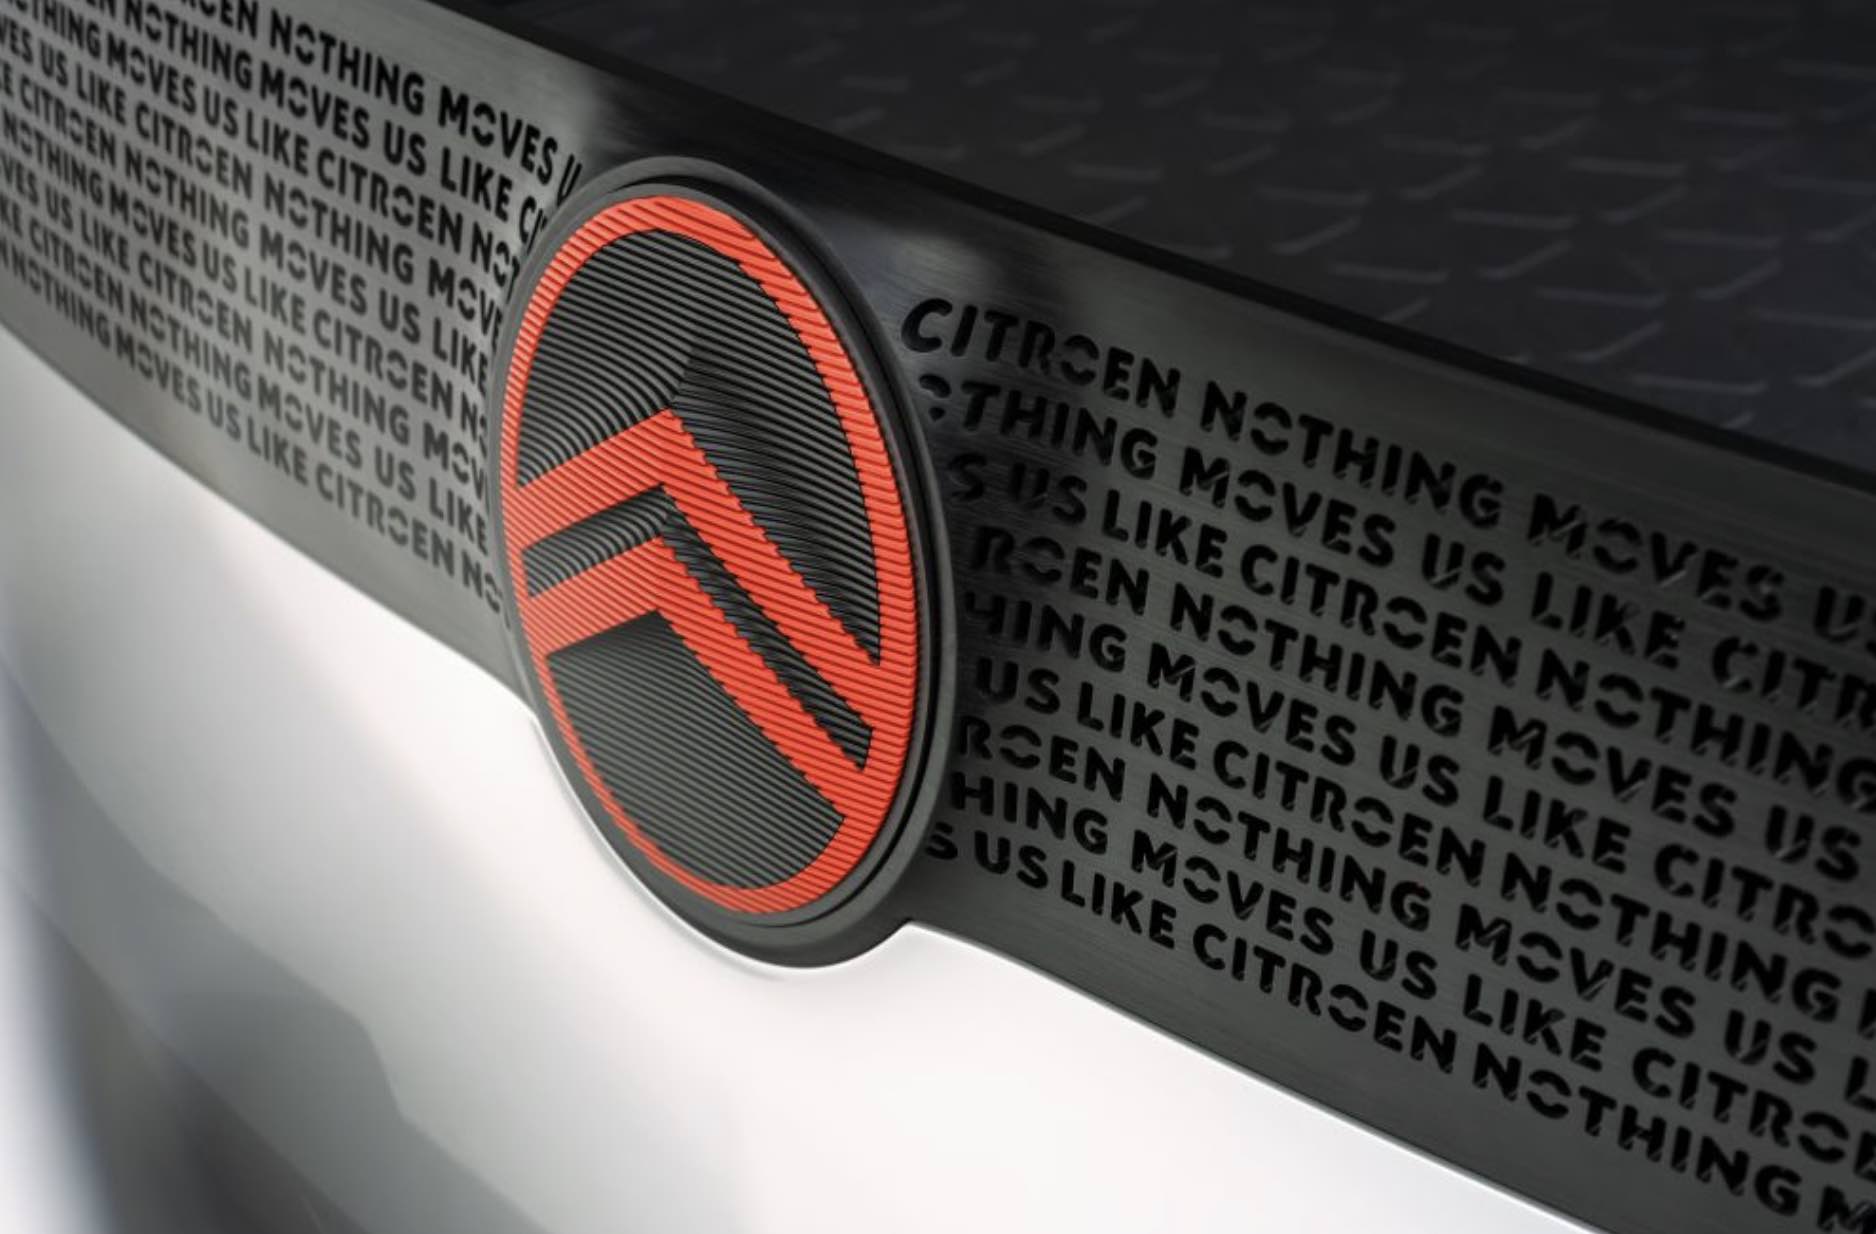 Citroën embarque un nouveau logo et une nouvelle identité 